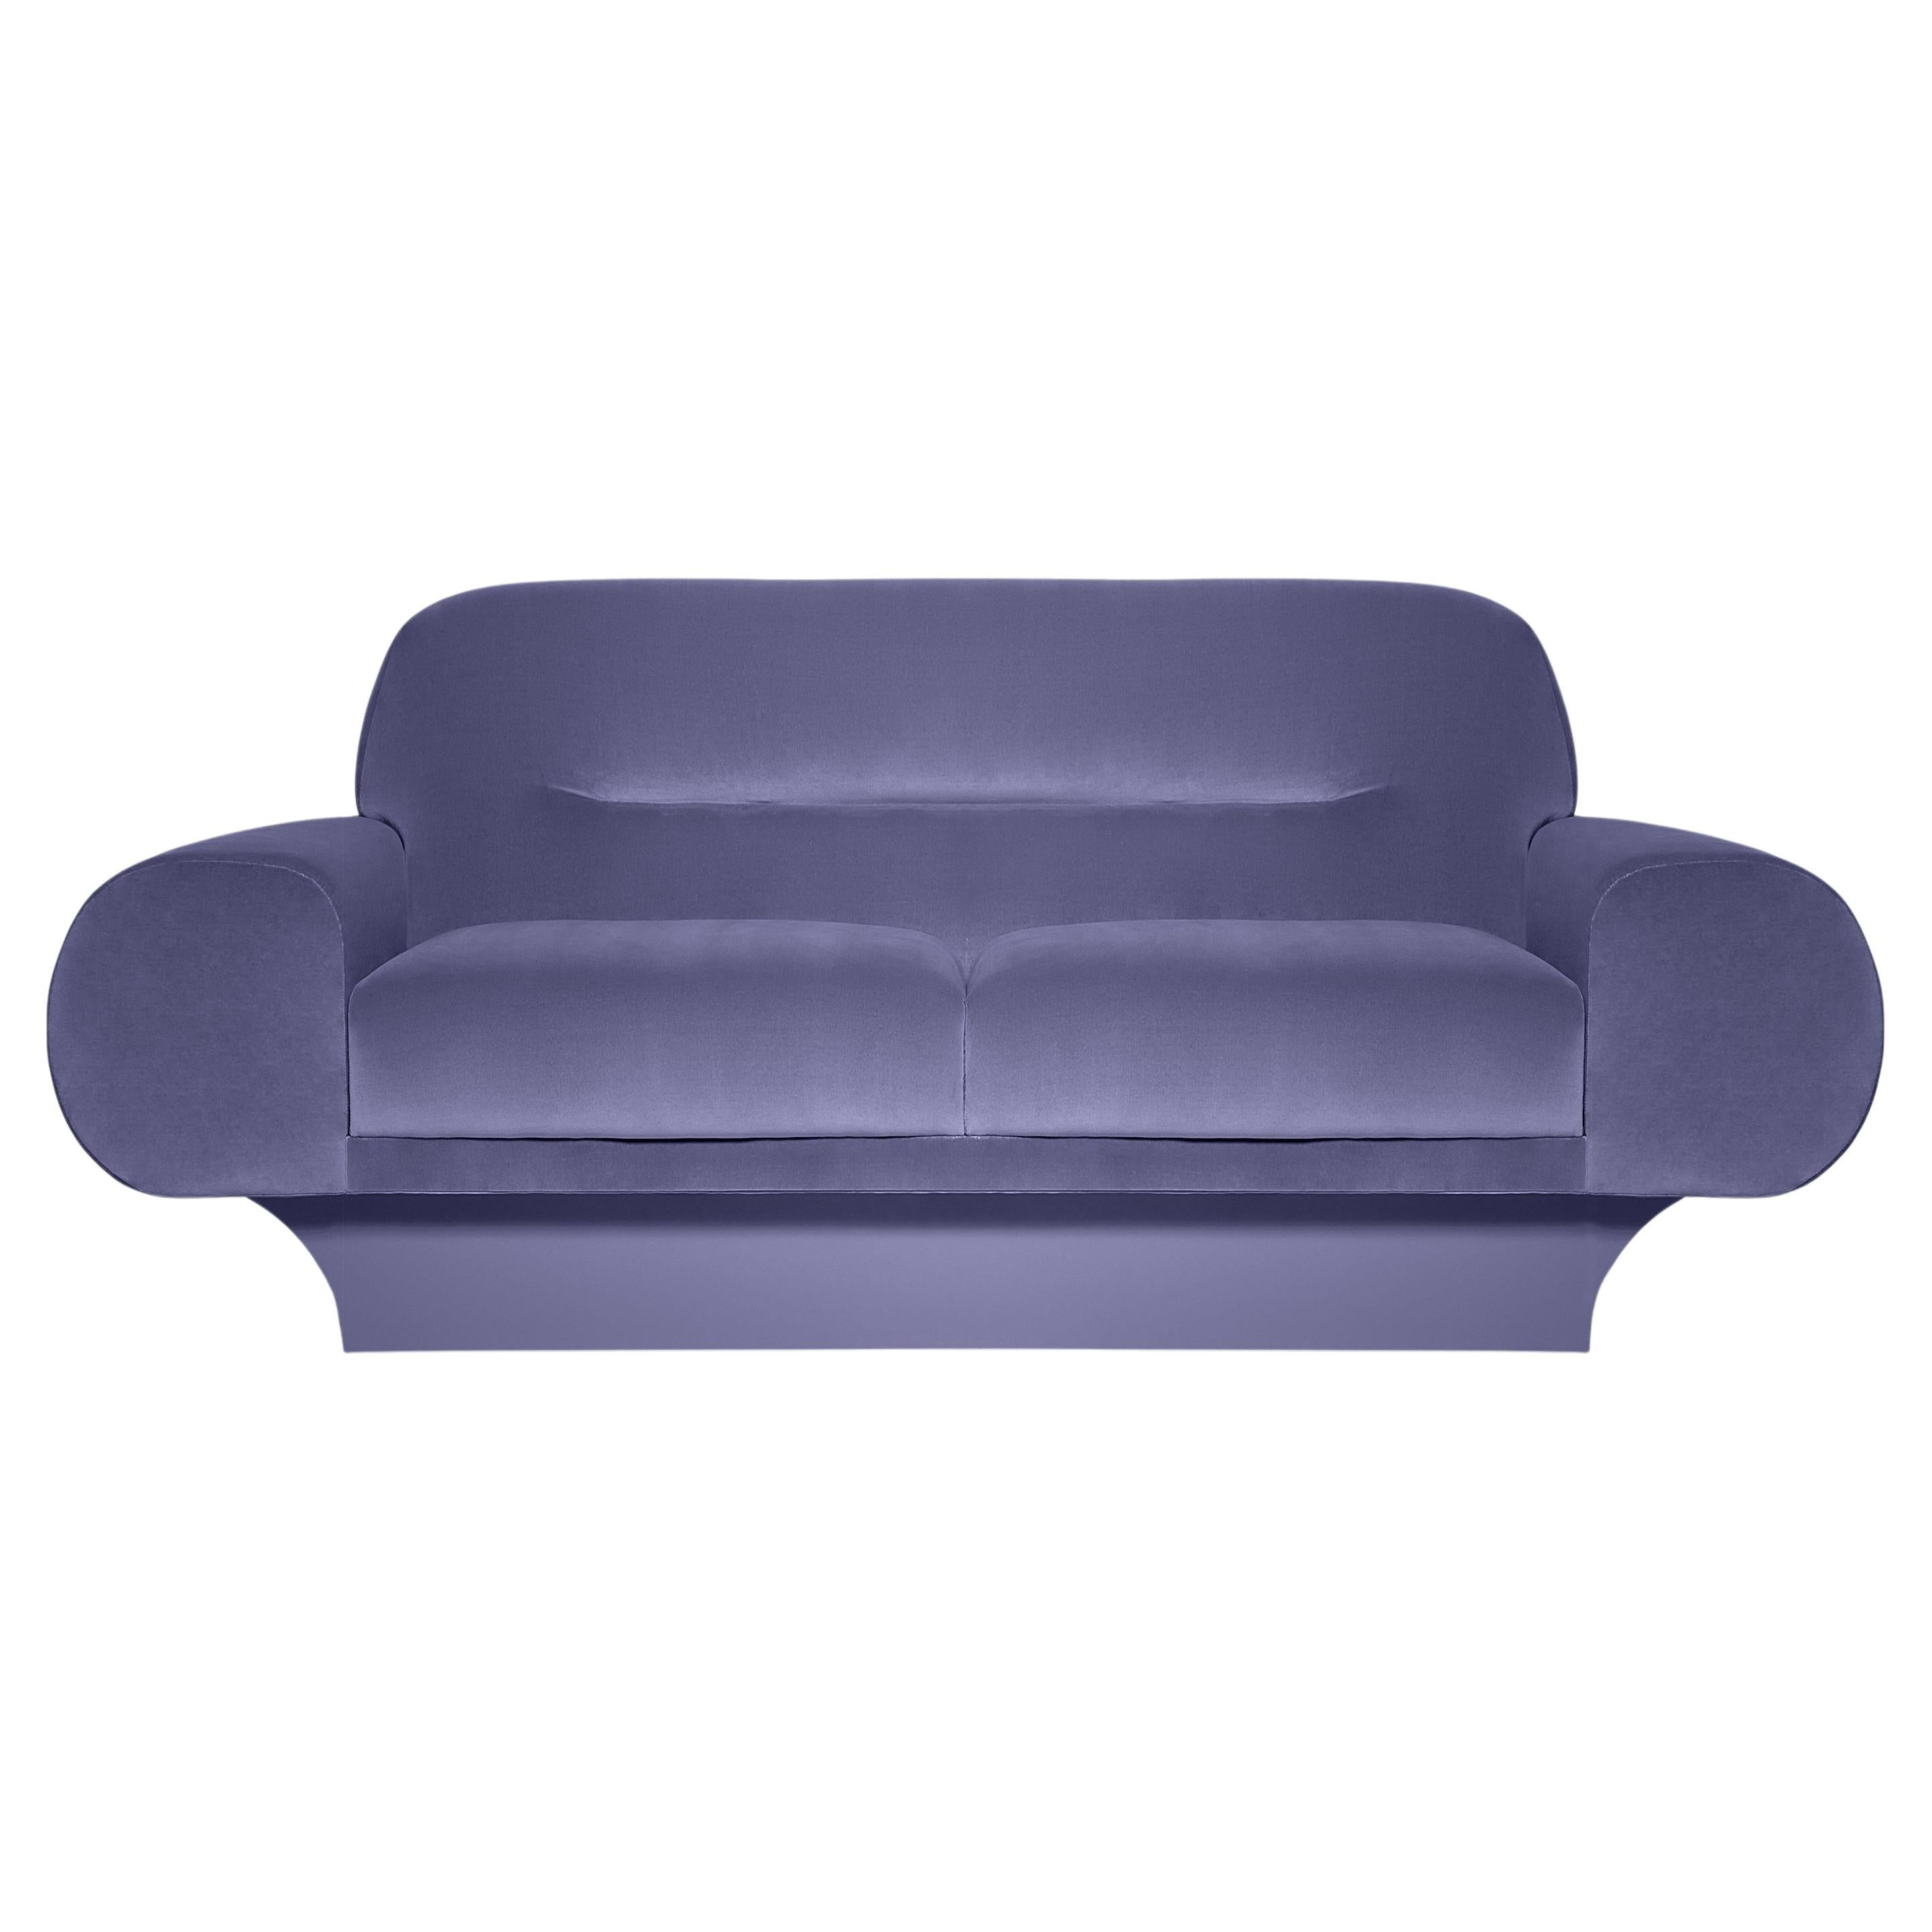 Dieses Sofa hat eine eindrucksvolle Silhouette. Die übergroßen, sanft geschwungenen Arm- und Rückenlehnen passen sowohl zu formellen als auch zu legeren Anlässen und sorgen für entspannten Komfort. Sie ist groß, kurvenreich und